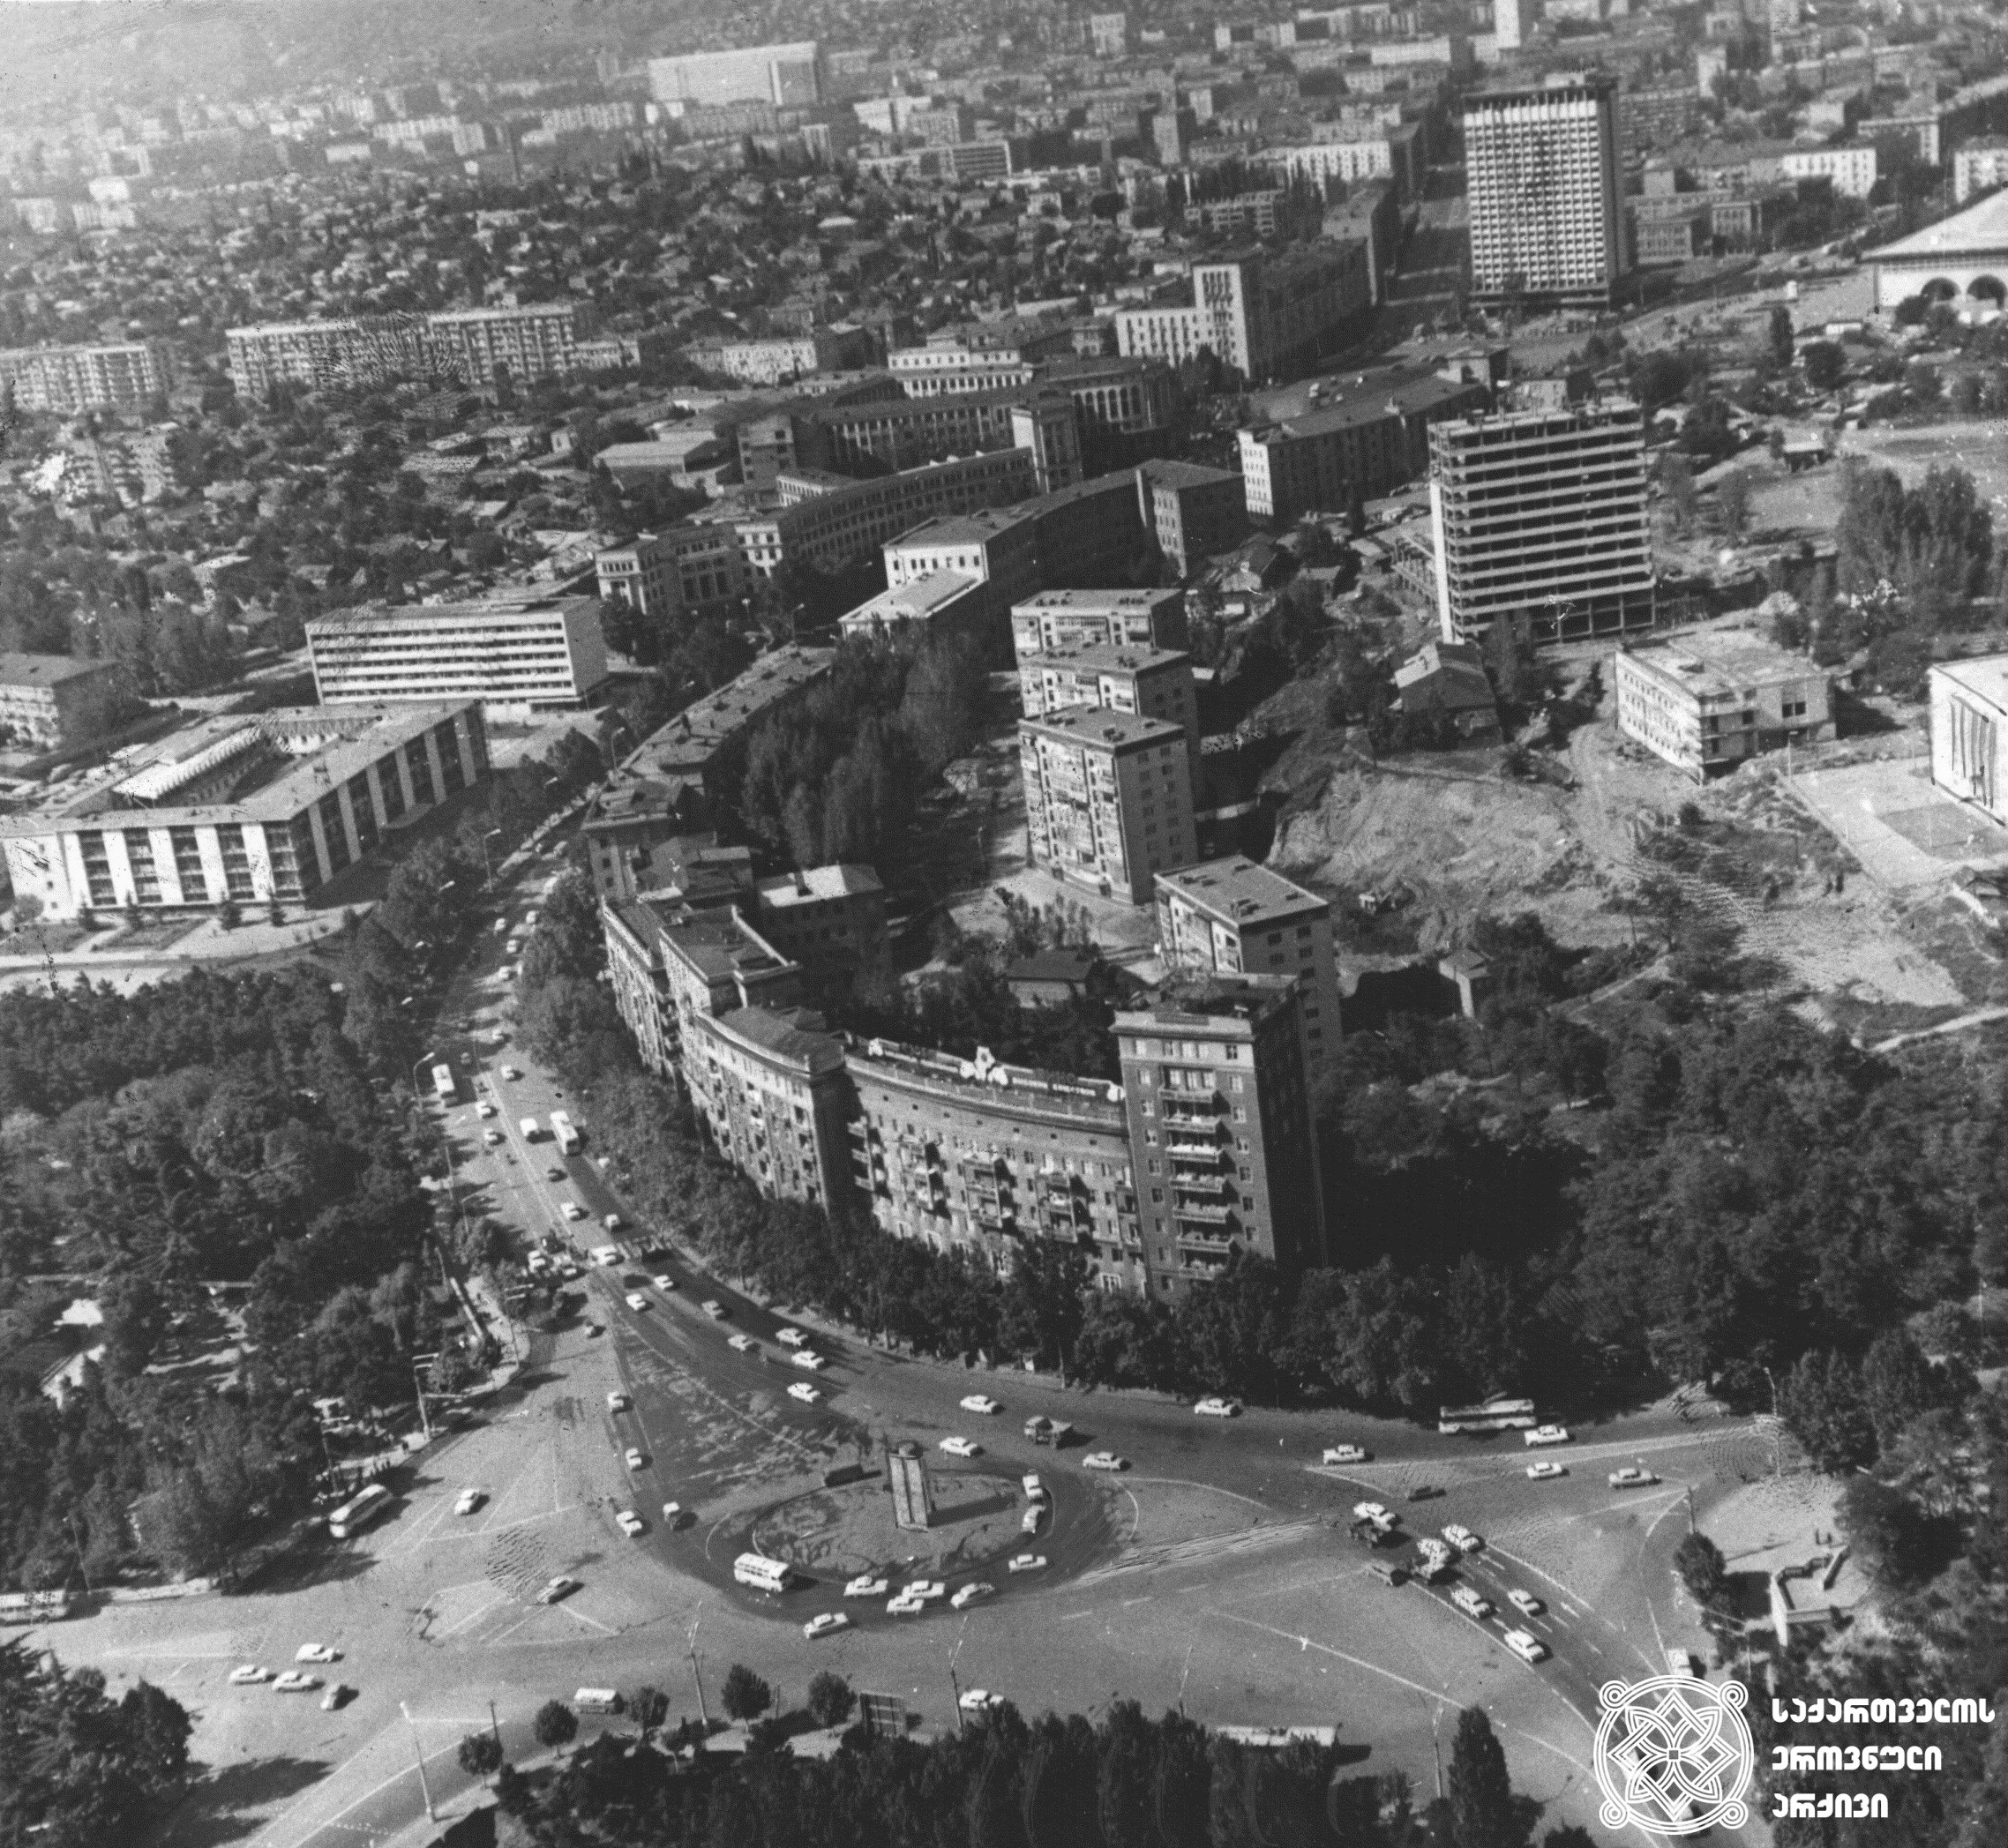 1970-იანი წლები
გმირთა მოედანი, კოსტავას ქუჩა, ტელევიზიის შენობა.
<br>
1970s
Heroes Square, Kostava Street, Television building.